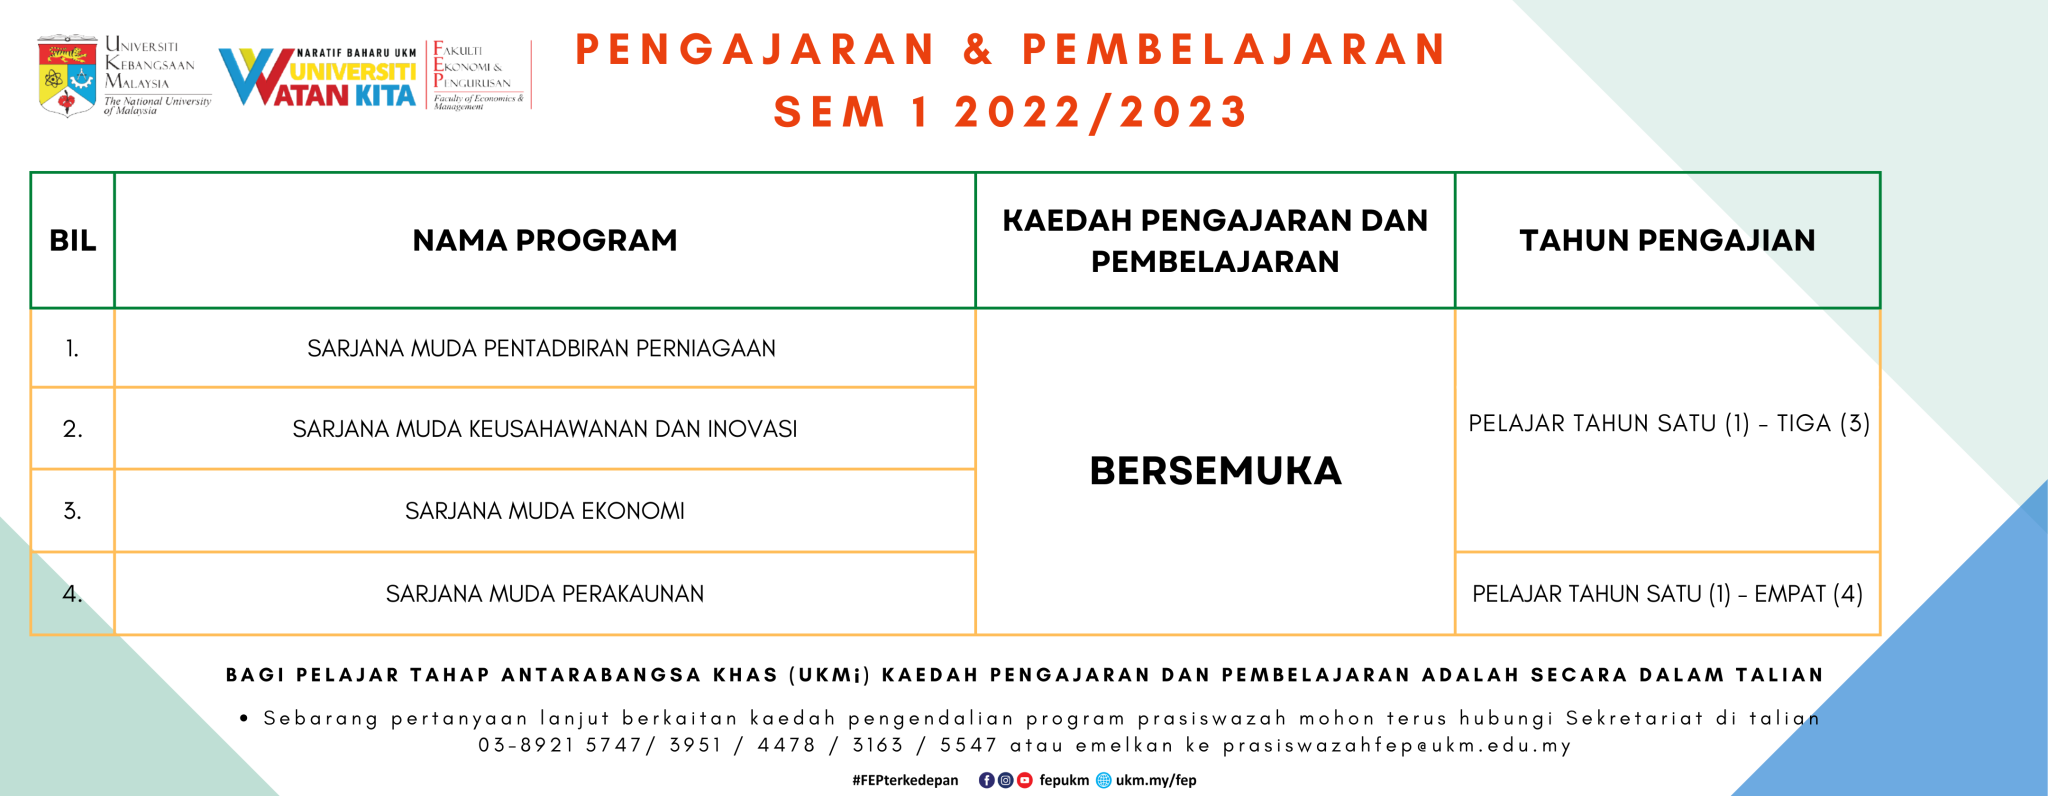 Pengajaran & Pembelajaran SEM 2 2021/2022